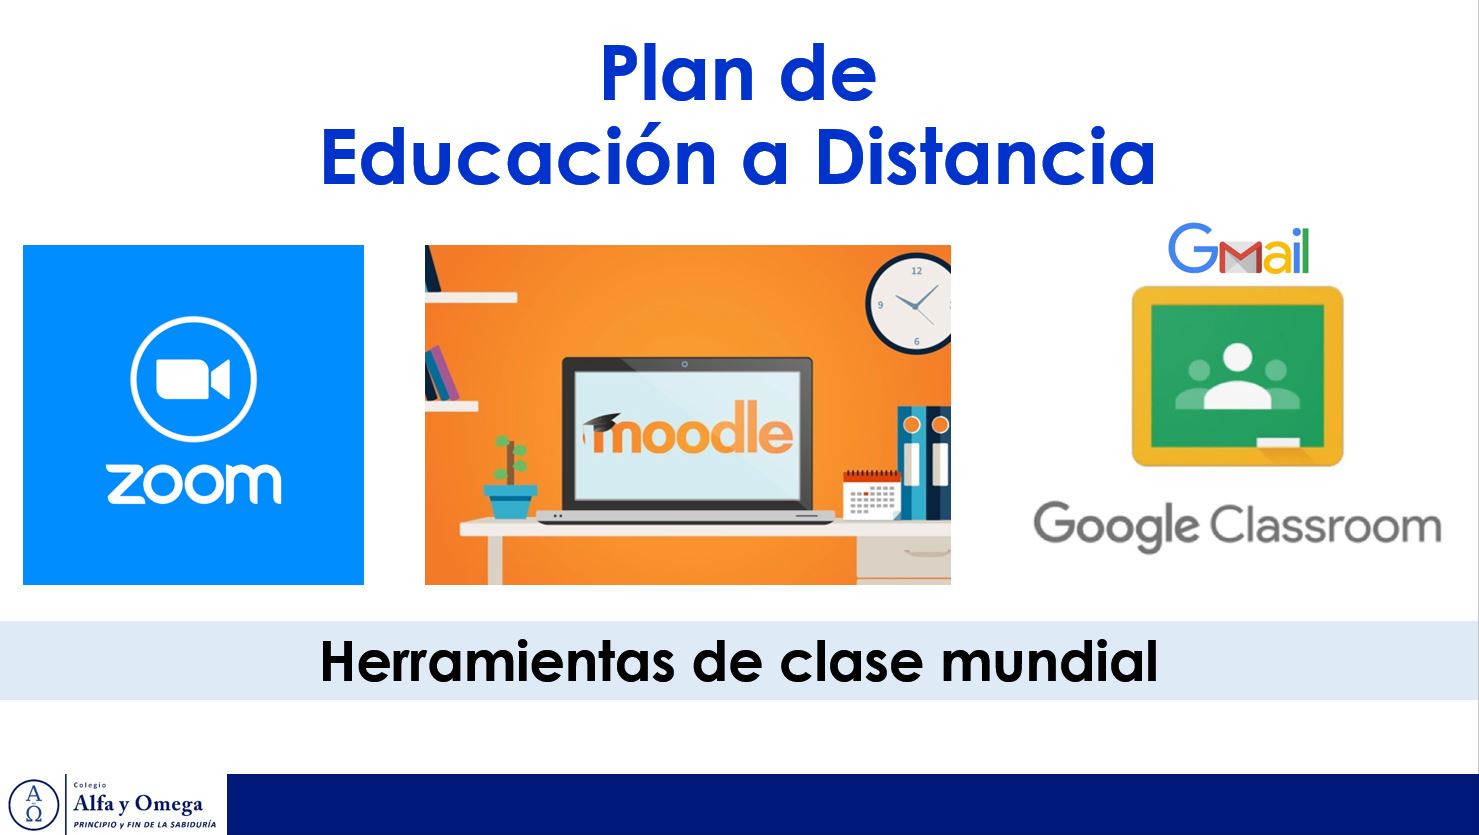 Plan de educación a distancia:
- Zoom
- Moodle
- Google Classroom